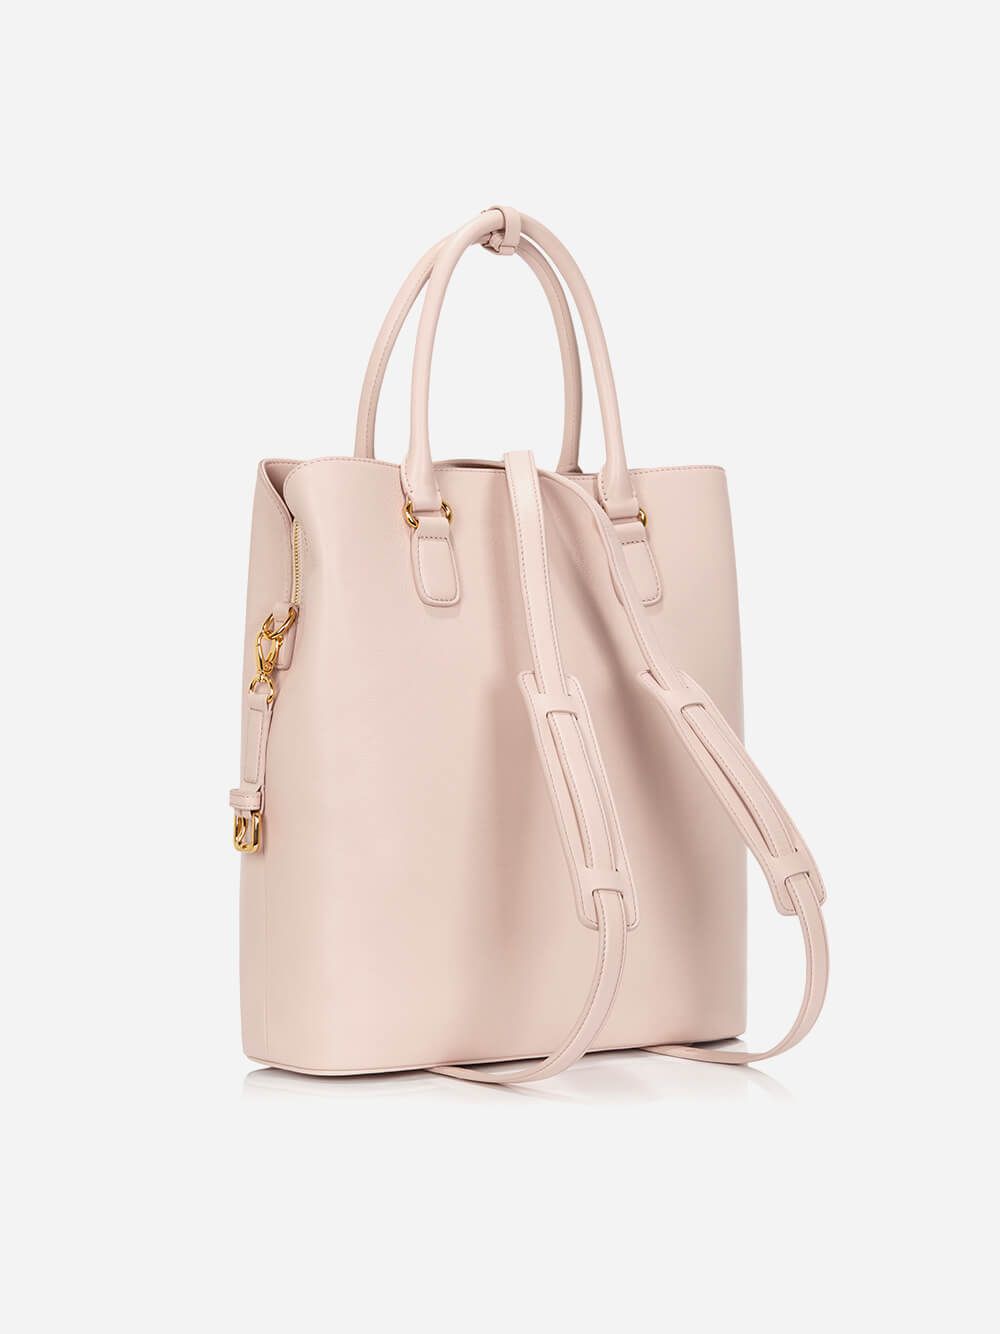 L Pink Bag | Any Di